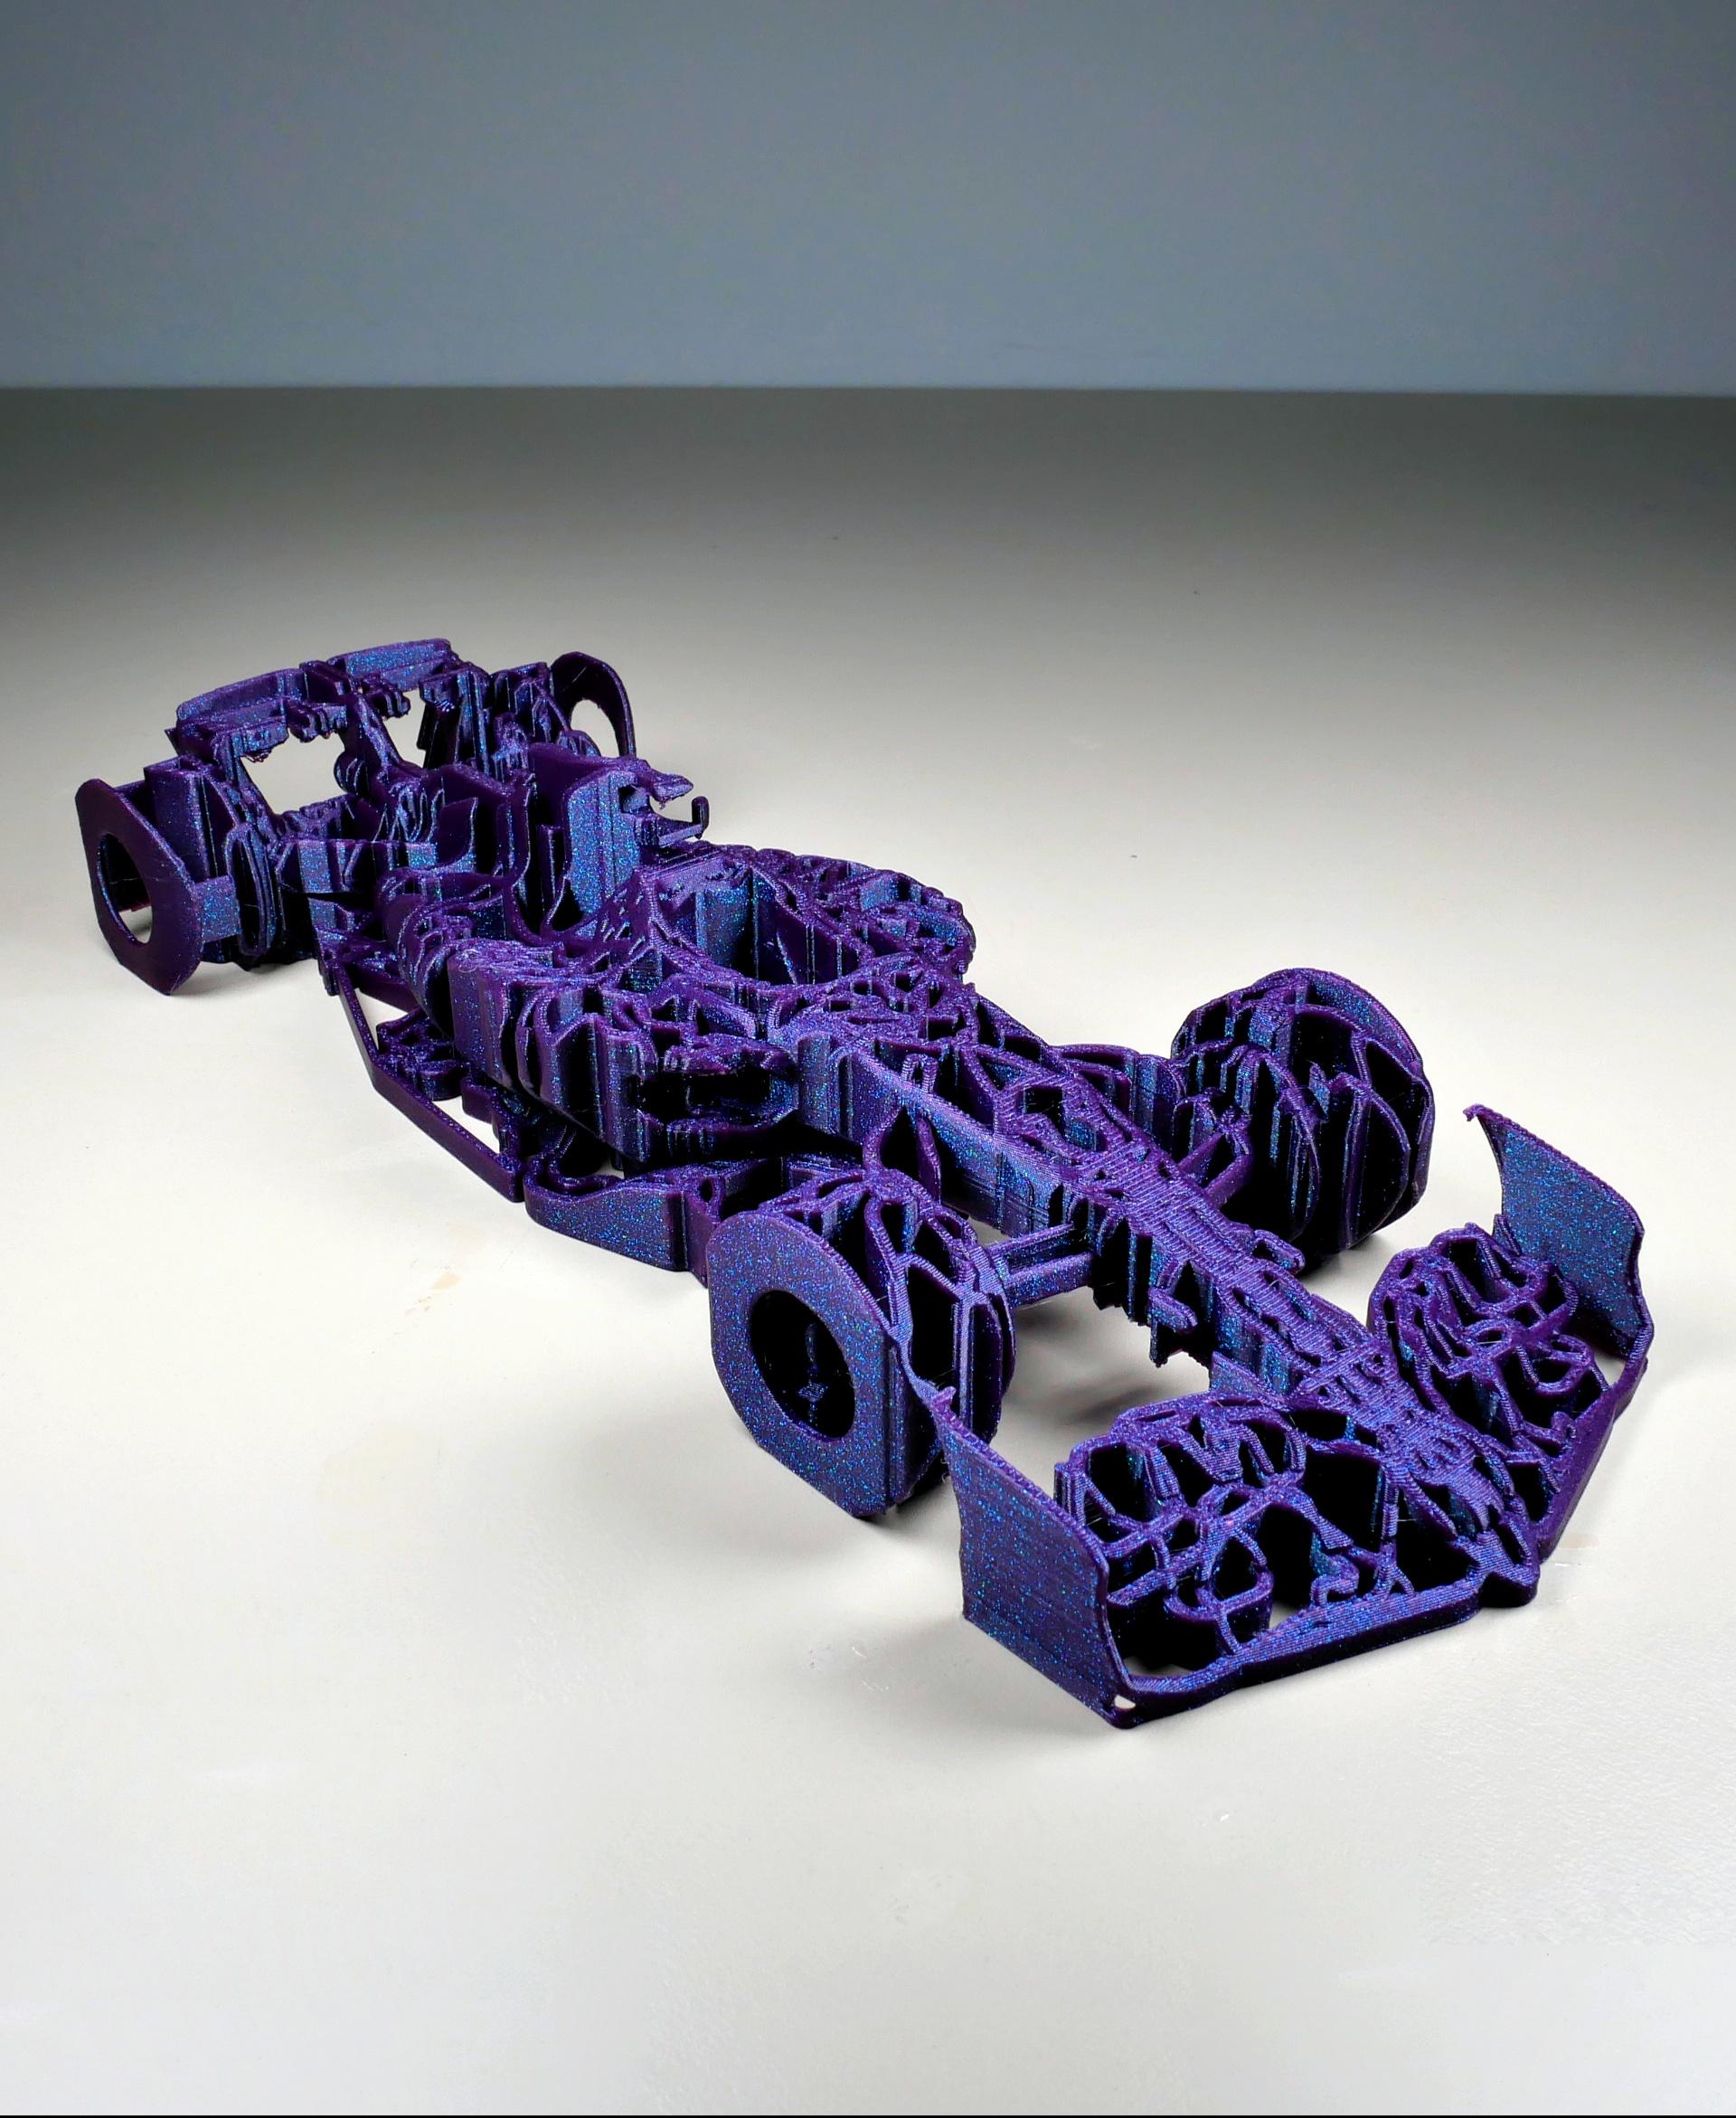 F1 Tracks Car - sculpted 3d model